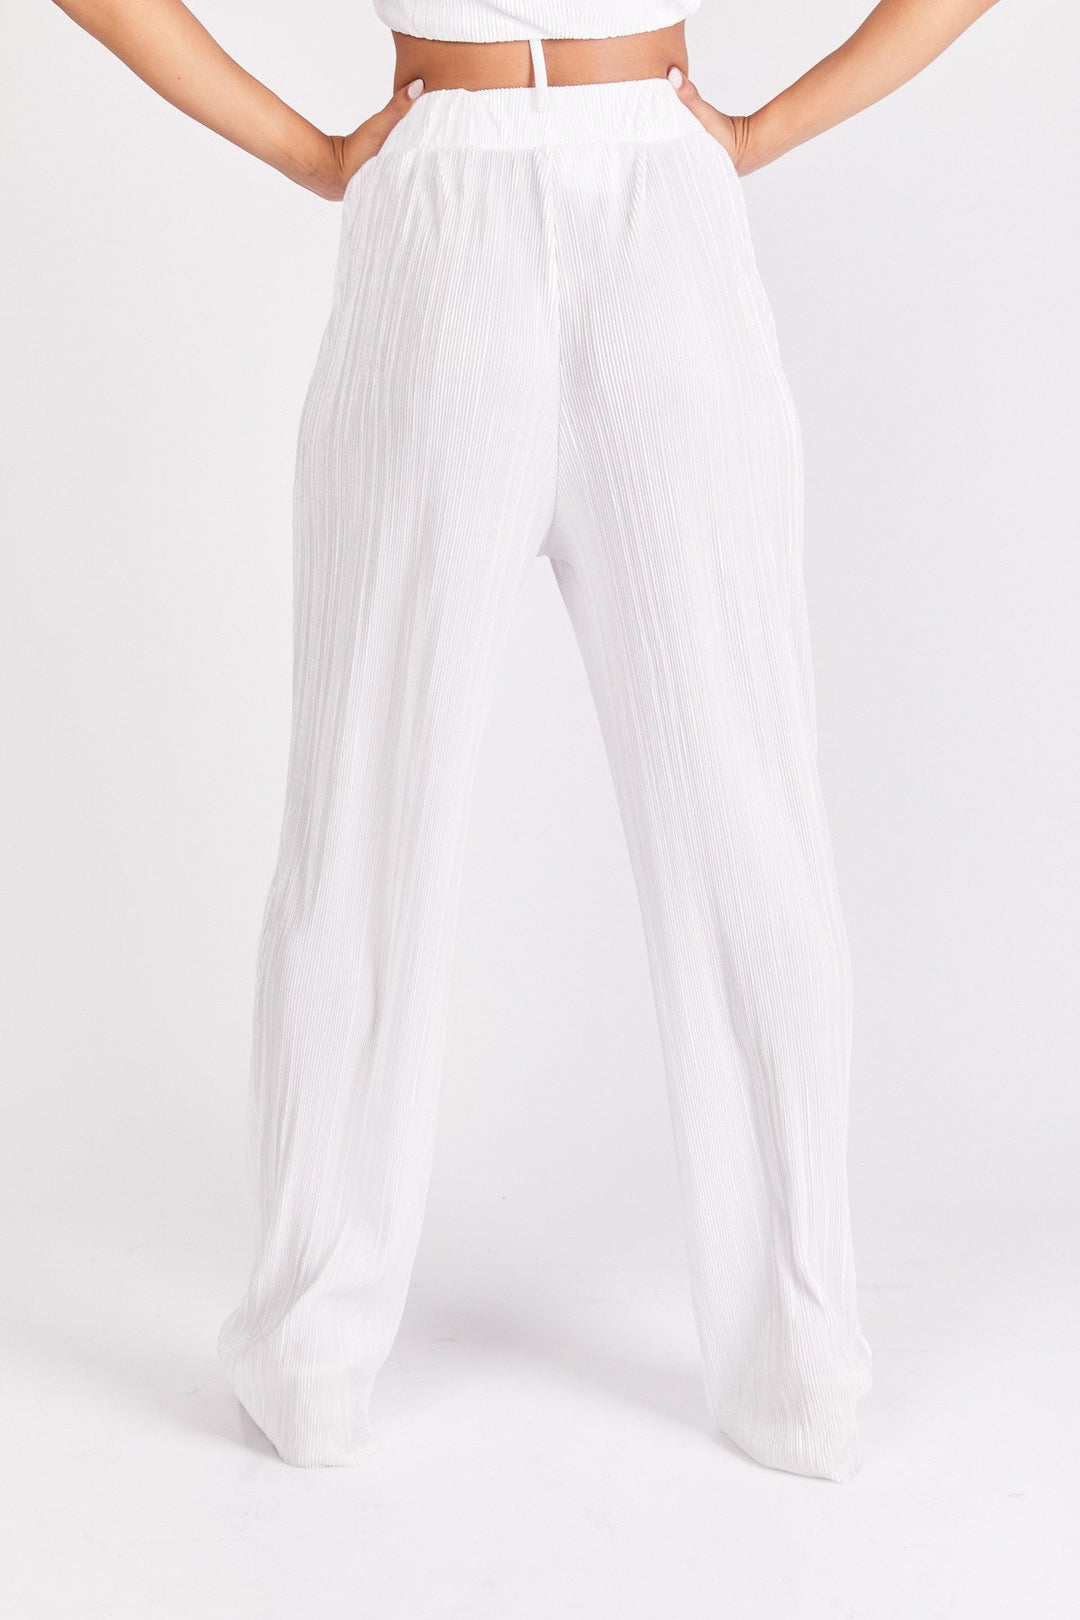 מכנסי קואצ'לה בצבע לבן לורקס - Neta Efrati